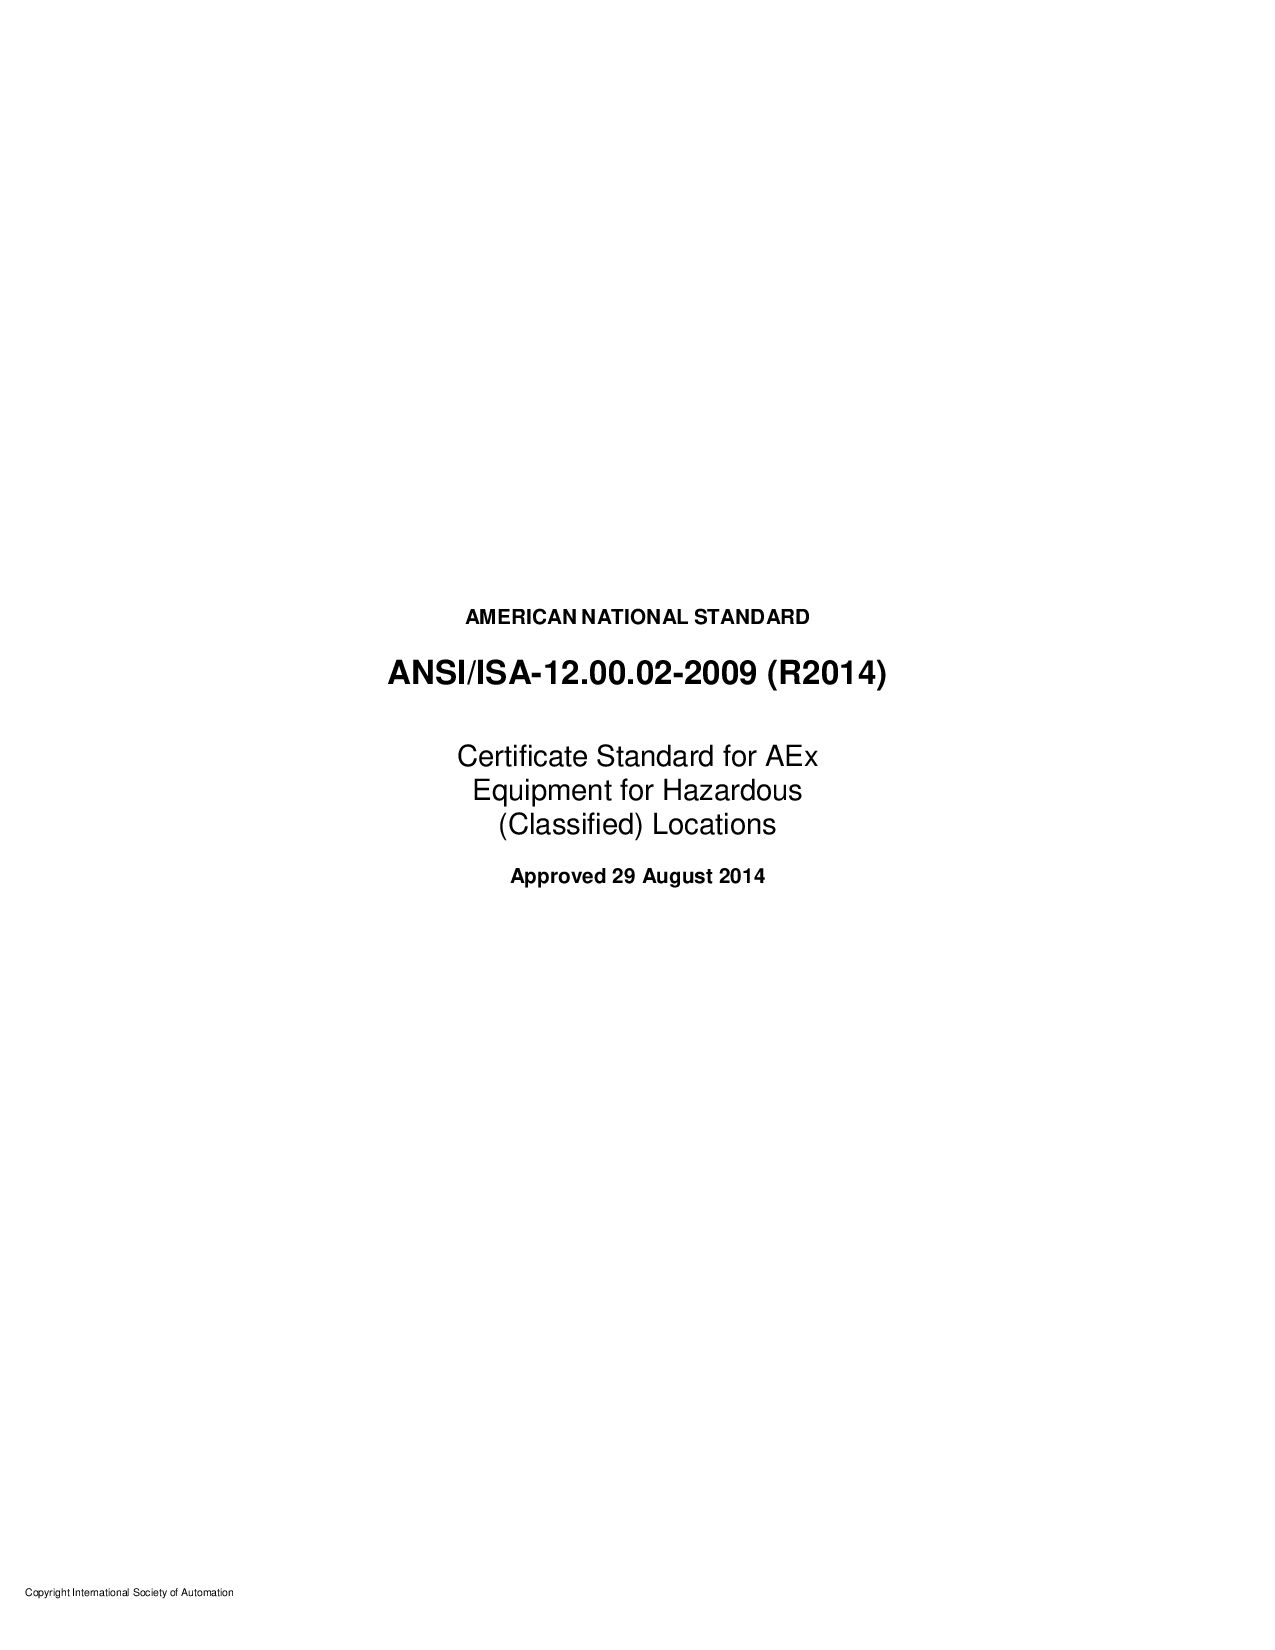 ANSI/ISA 12.00.02-2009(2014)